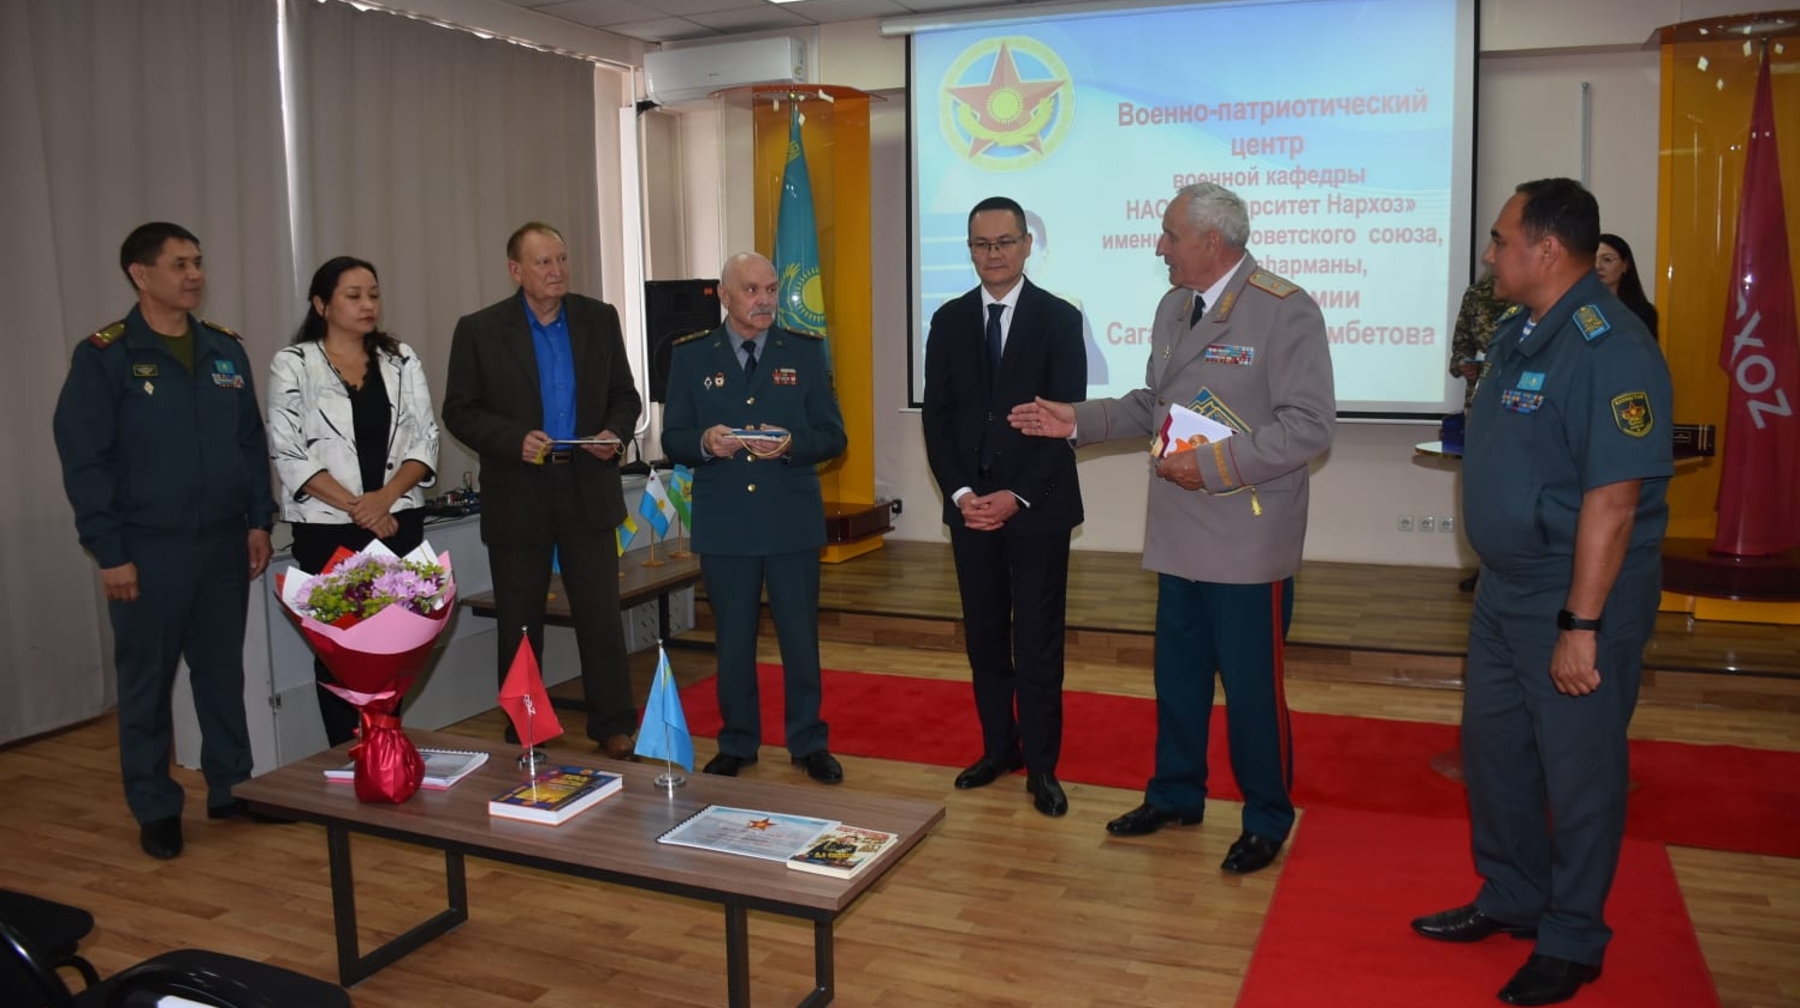 В Алматы открыт военно-патриотический центр имени Сагадата Нурмагамбетова